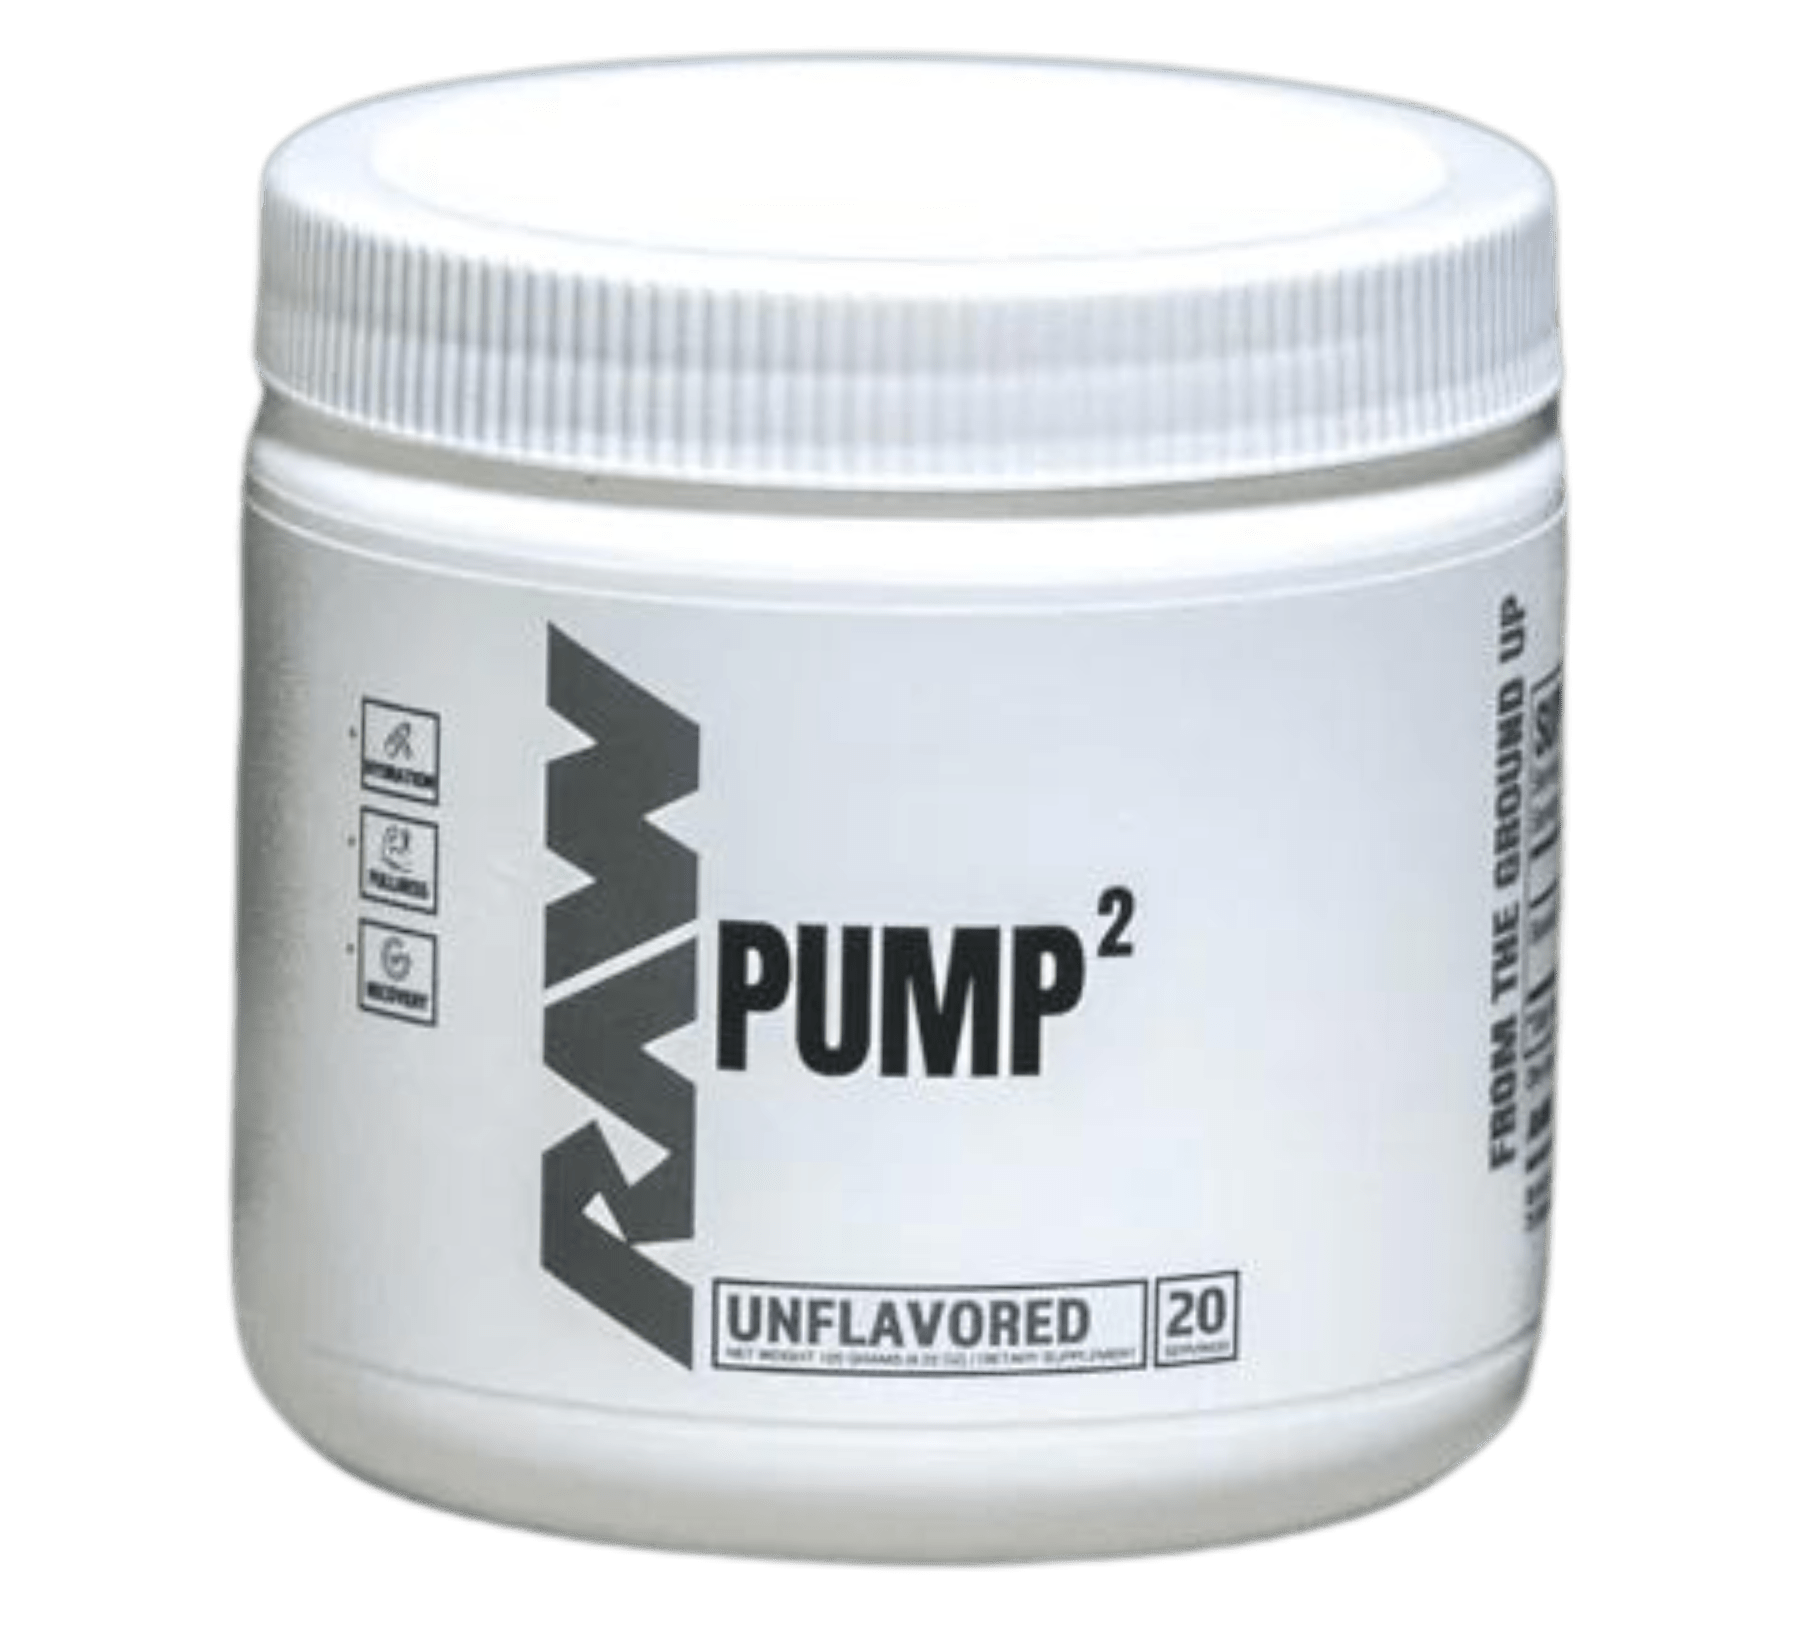 RAW Nutrition Pump2 - Bemoxie Supplements